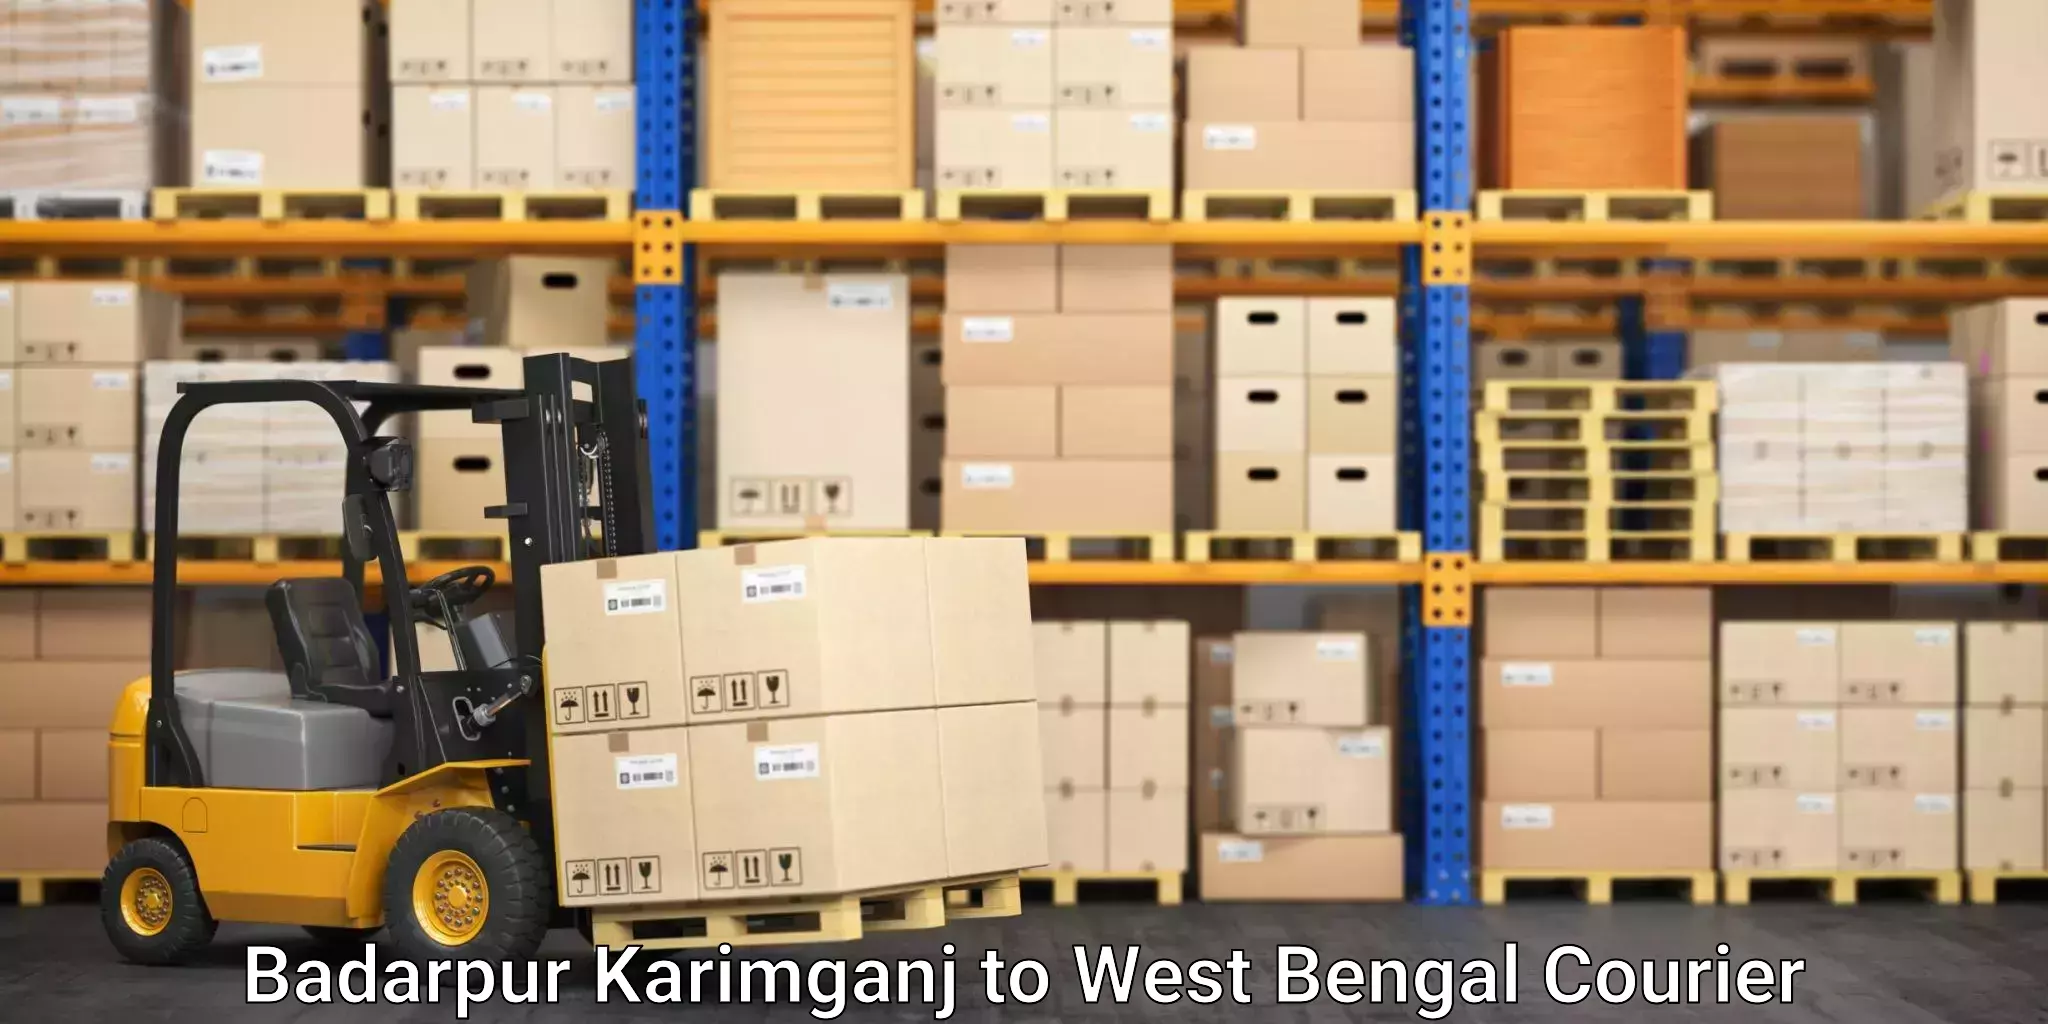 Door-to-door freight service Badarpur Karimganj to Sitai